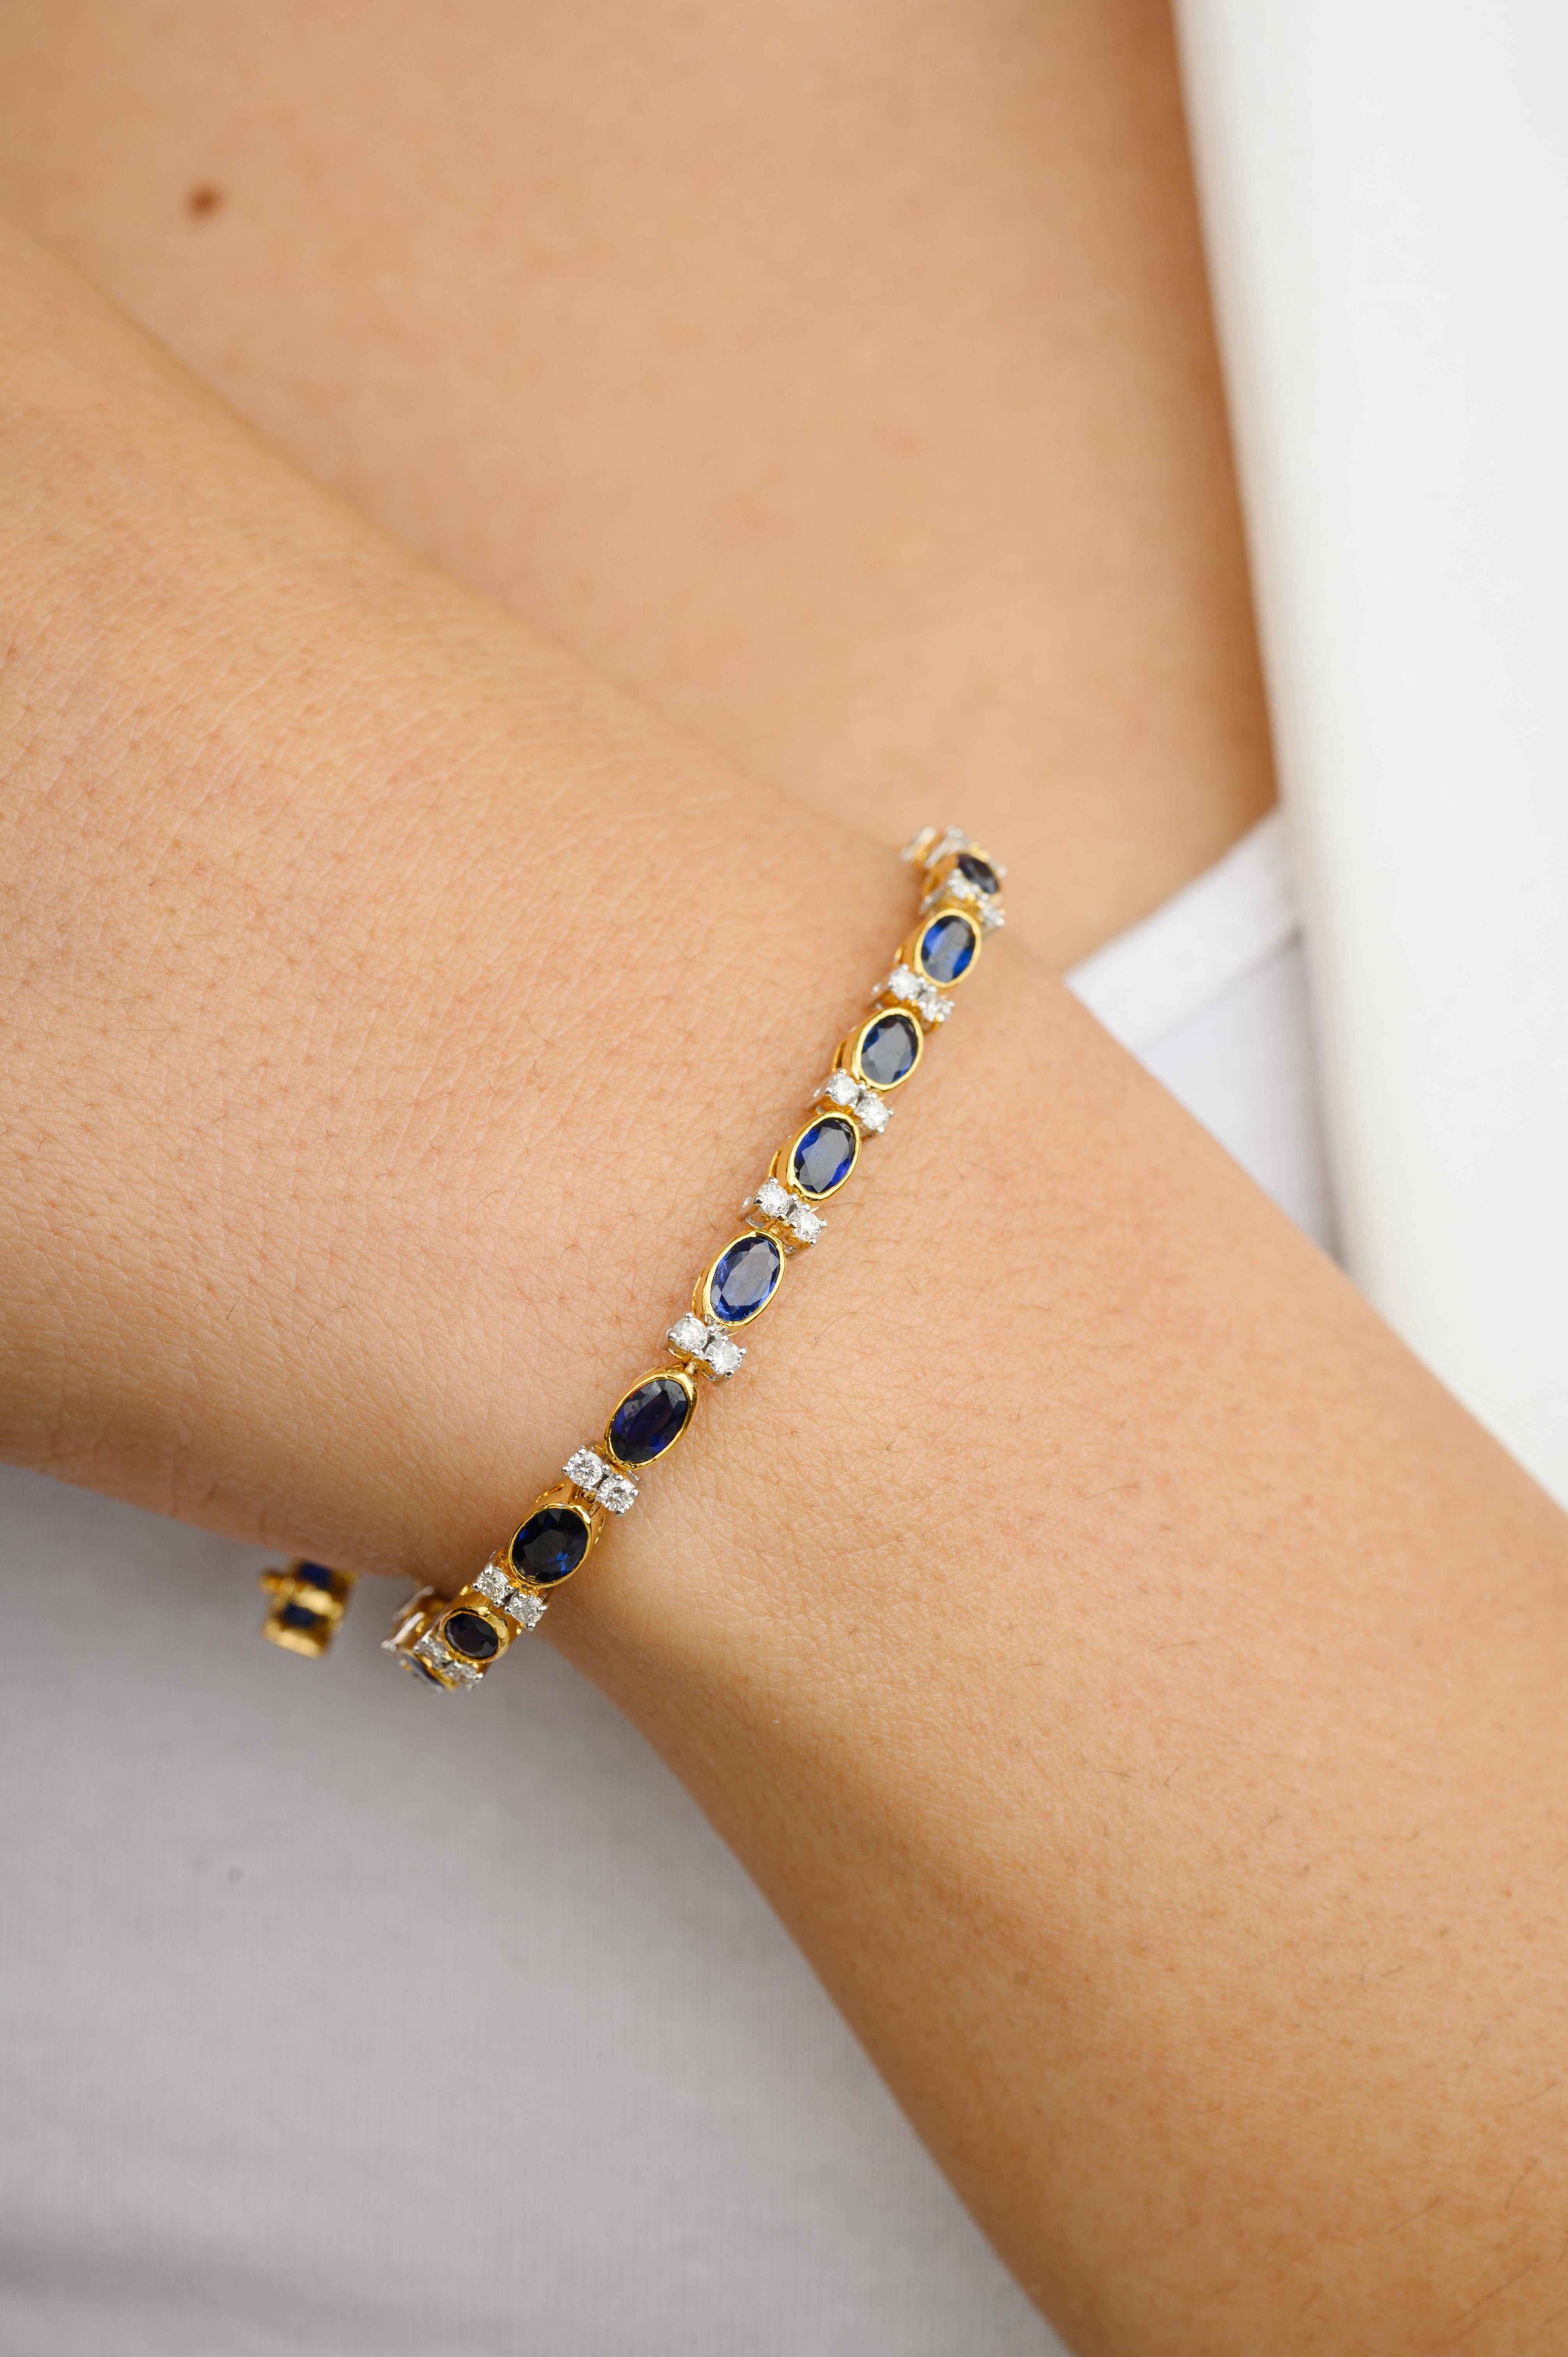 Ce bracelet de tennis de mariage en or 18 carats de 6,91 CTW Natural Blue Sapphire Diamond met en valeur un saphir bleu naturel de 6,91 carats et des diamants de 0,97 carats qui scintillent à l'infini. Il mesure 7.25 pouces de long. 
Le saphir